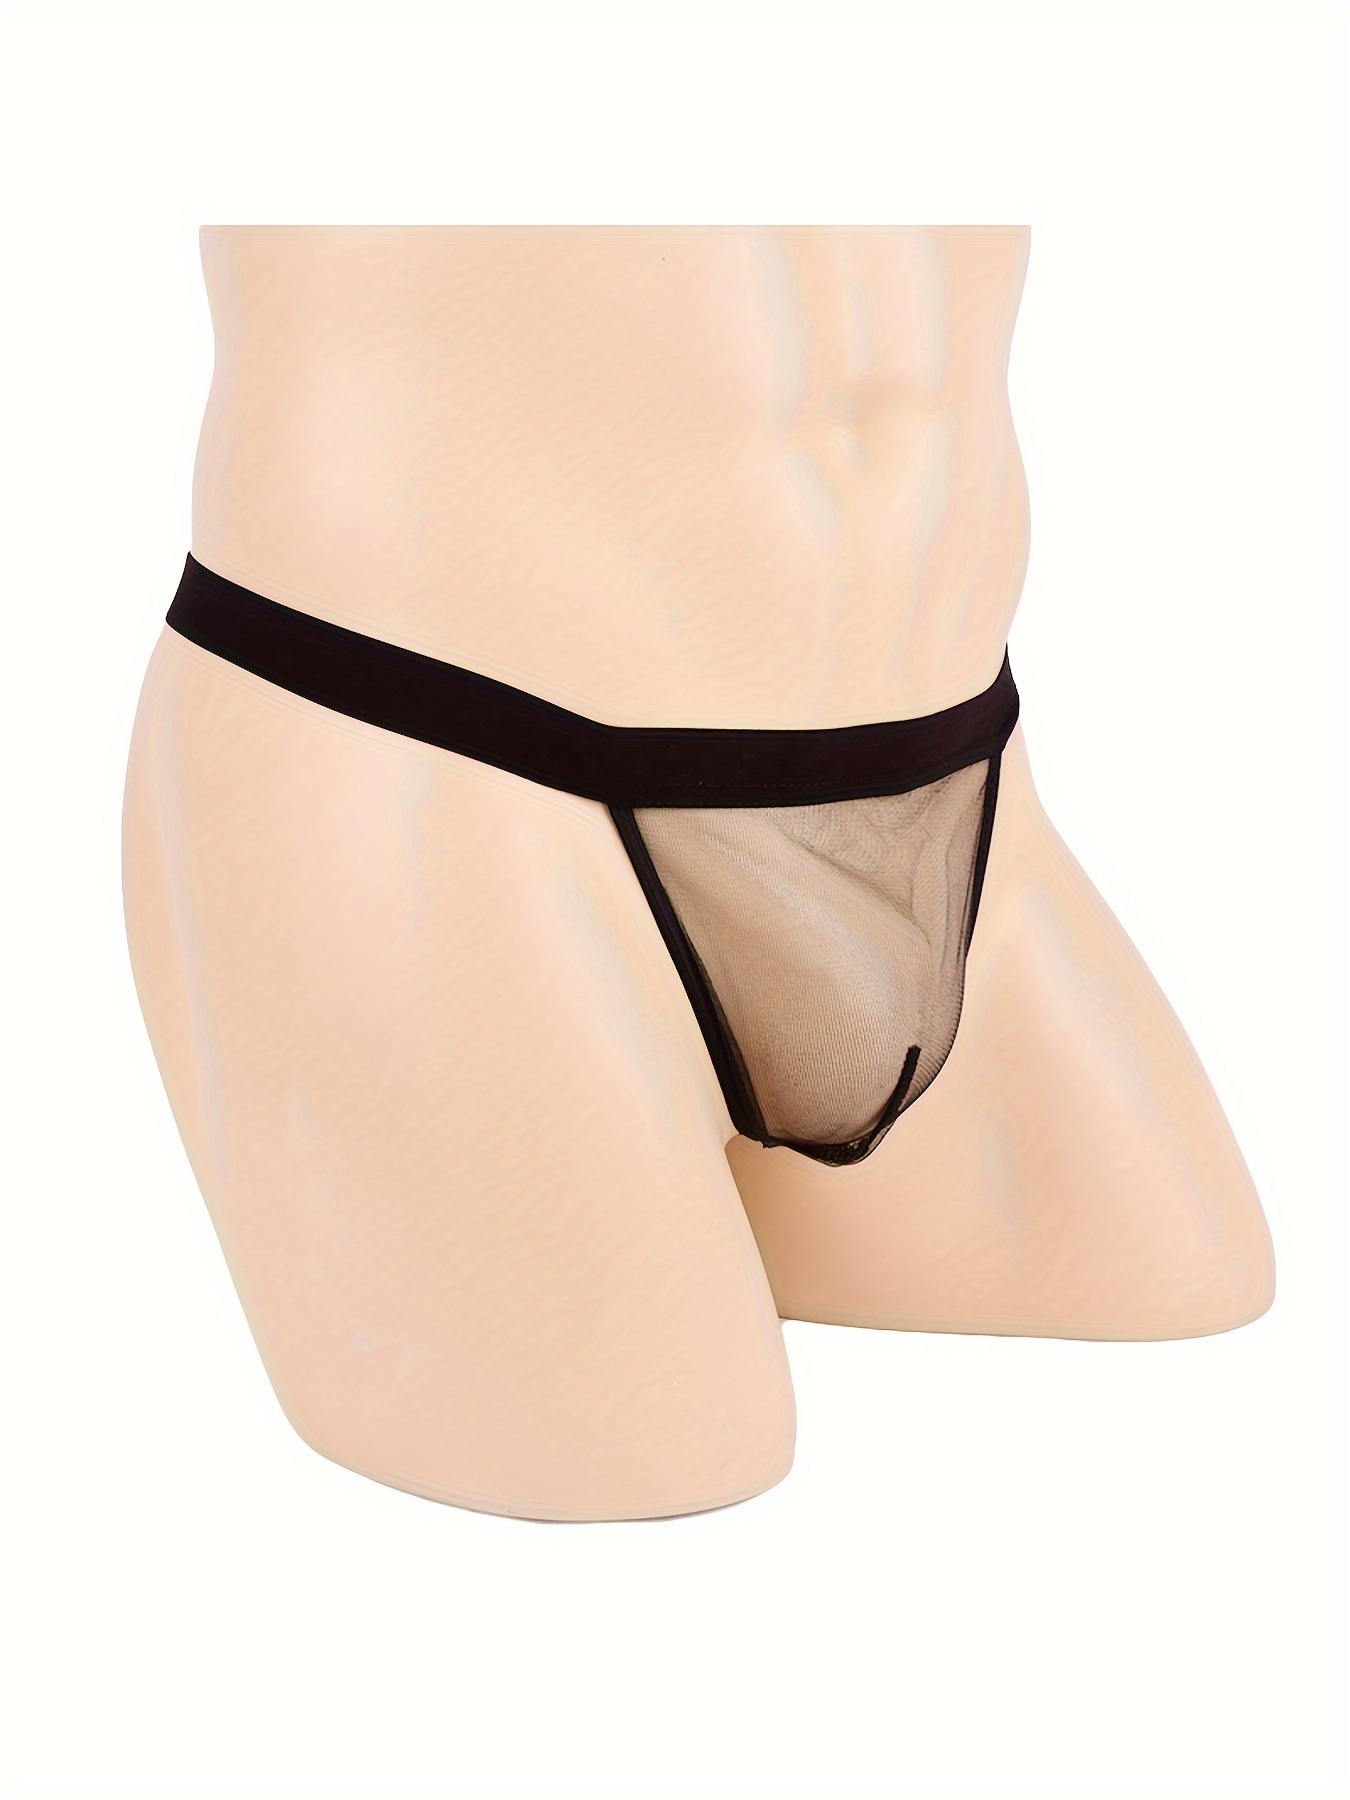 Men's See-through Thong G-string Underwear. Men's T-back Thong G